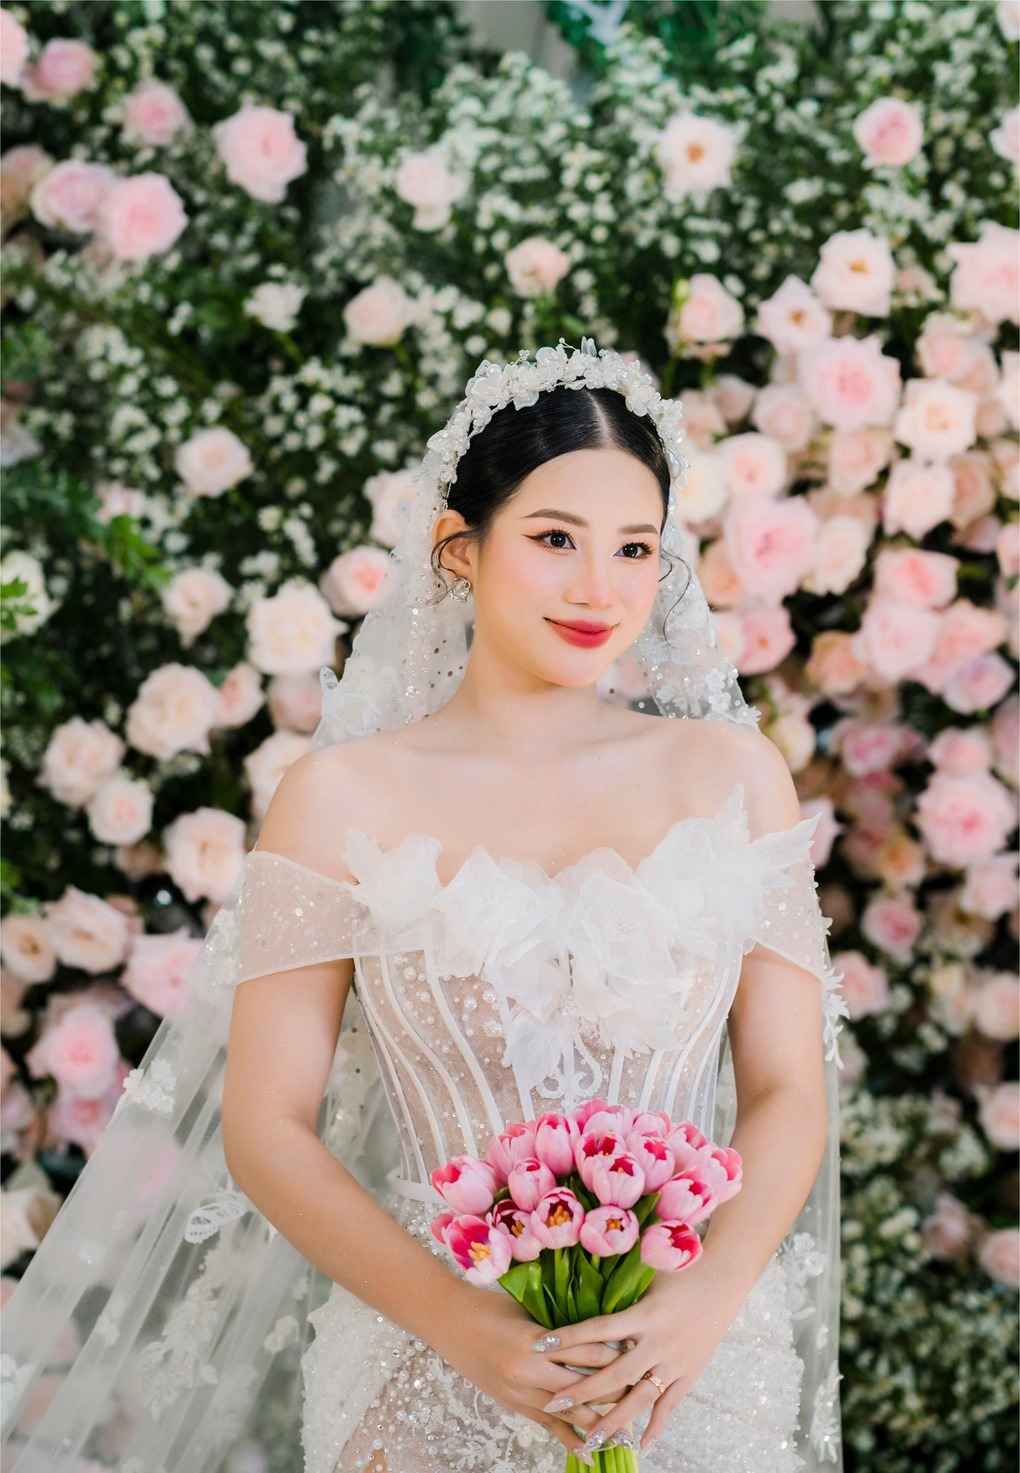 Đầu tháng 7 vừa qua, cô dâu Thiên Kim - nhân viên kiêm bảo mẫu của Đoàn Di Băng đã tổ chức đám cưới của mình tại một nhà hàng sang trọng tại Bình Dương.